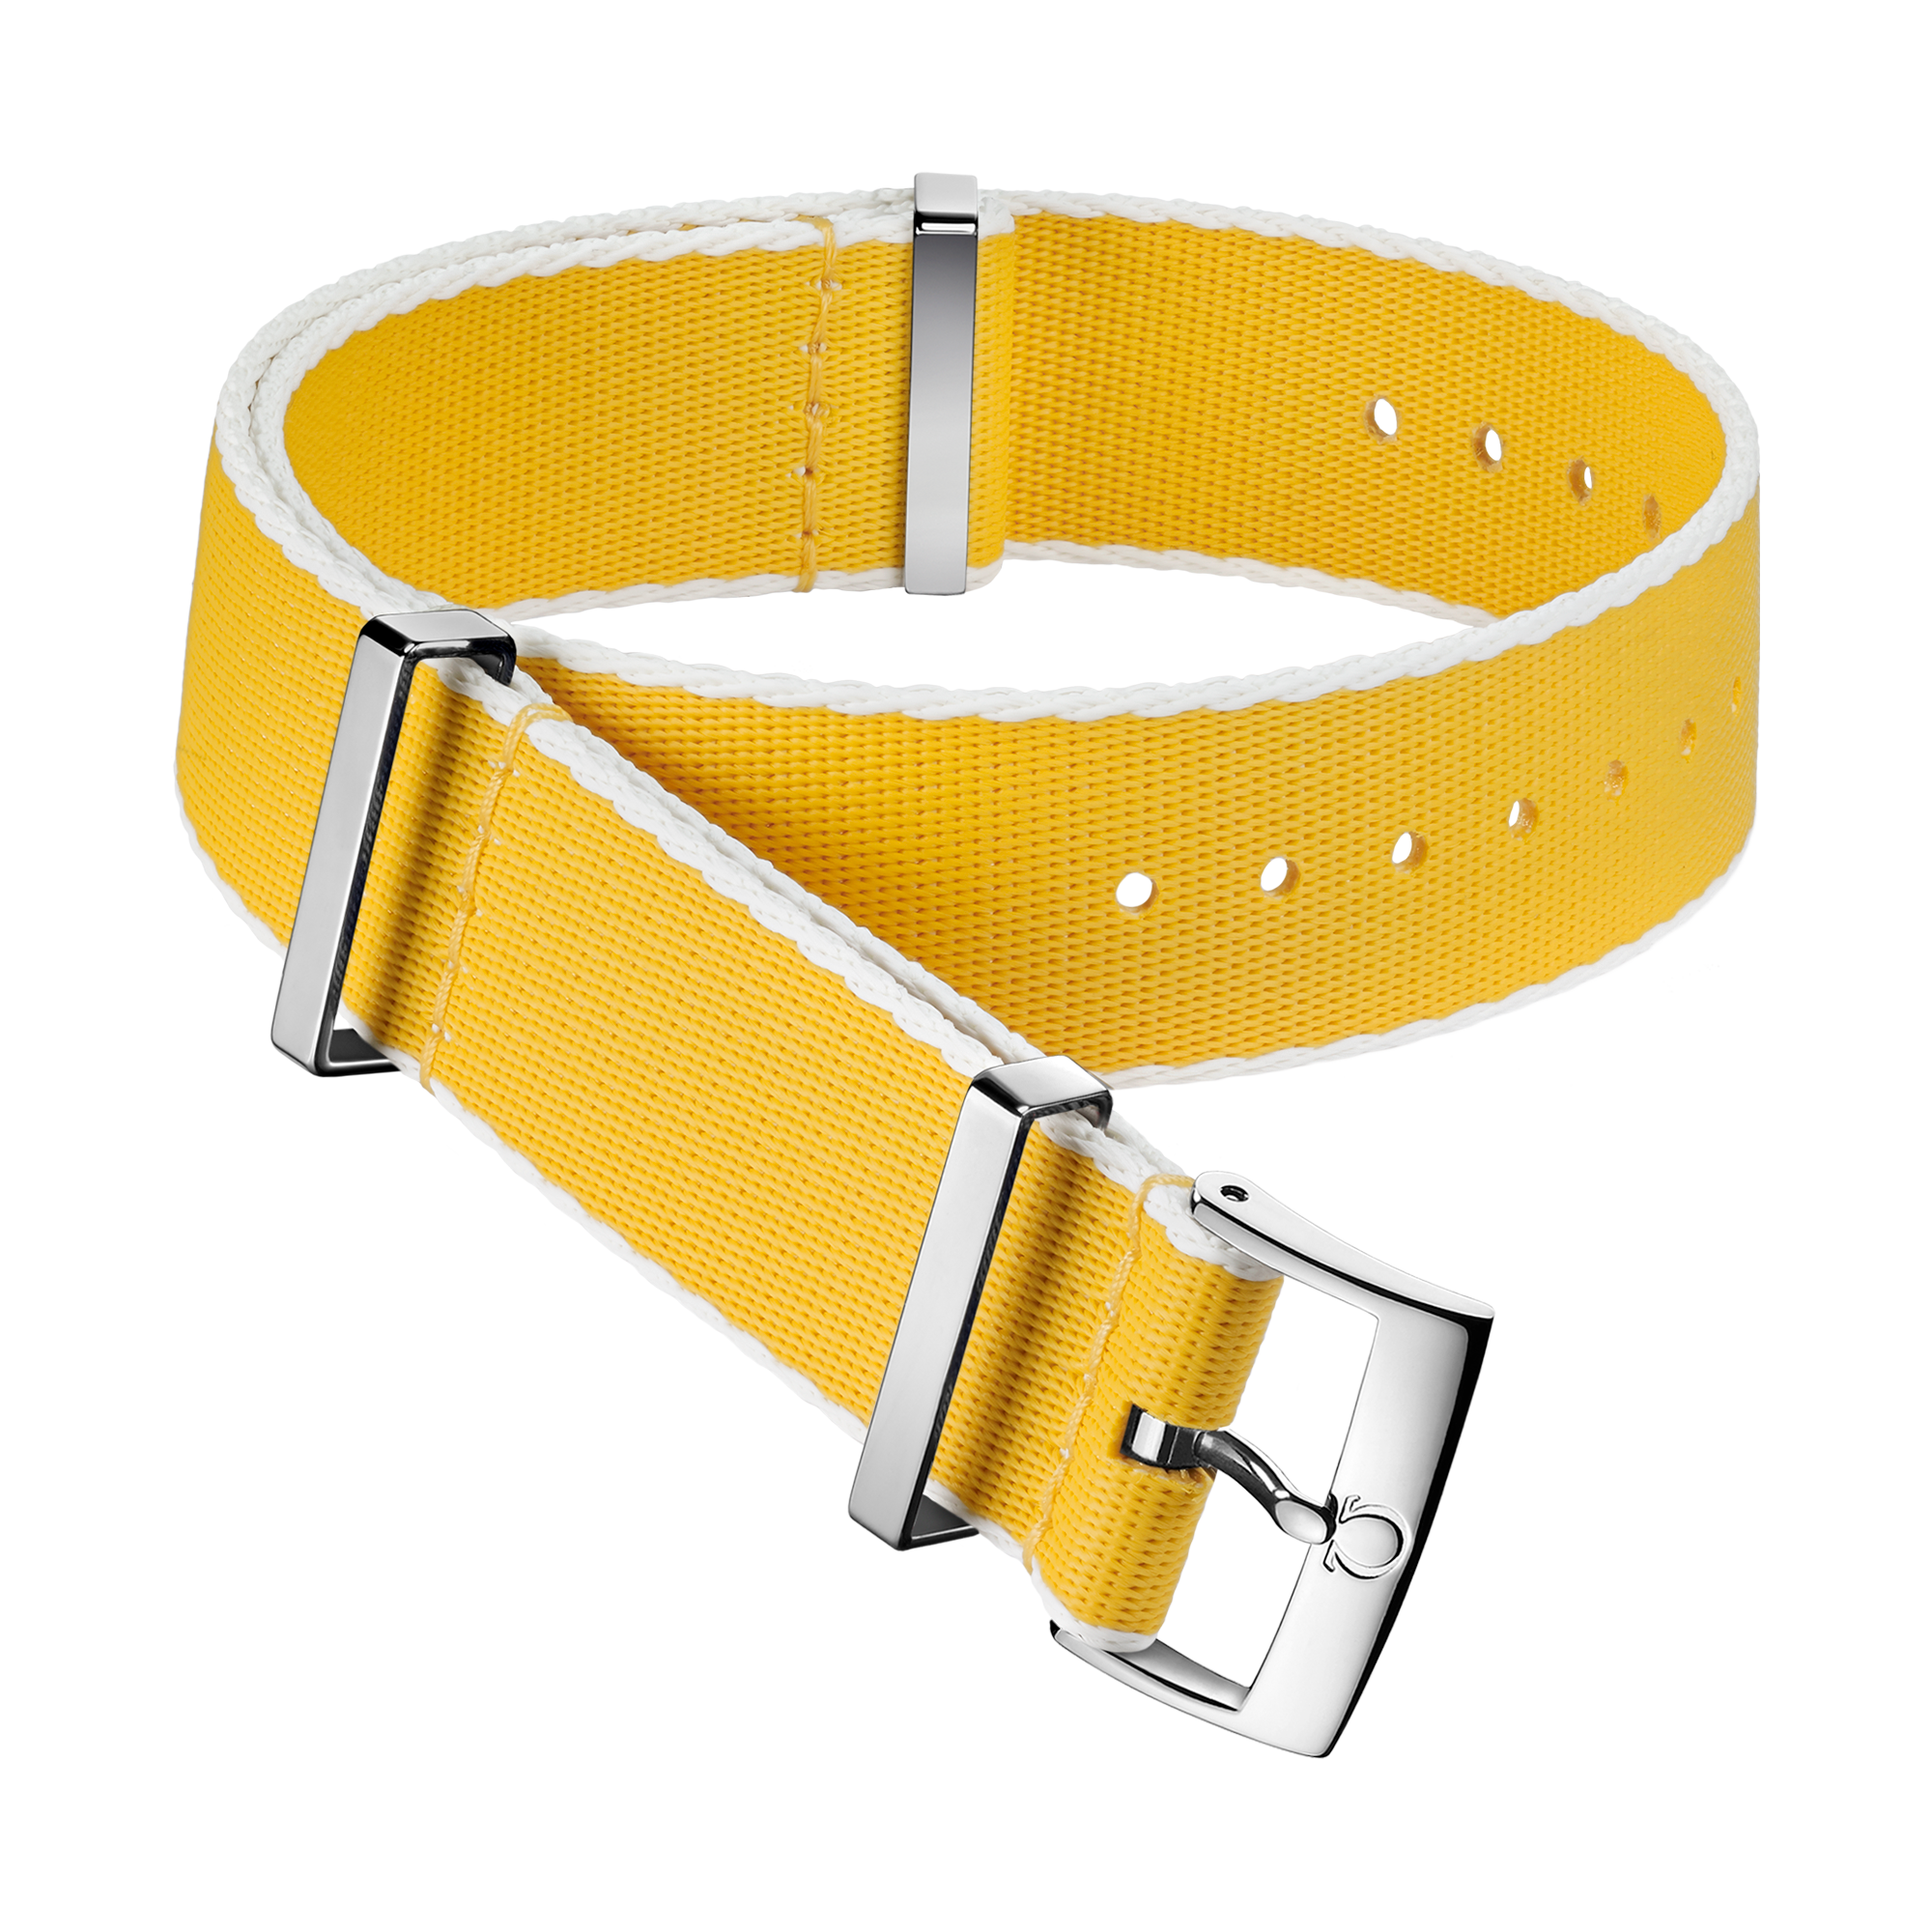 Cinturino NATO - Cinturino in poliammide giallo con bordi bianchi - 031CWZ010706